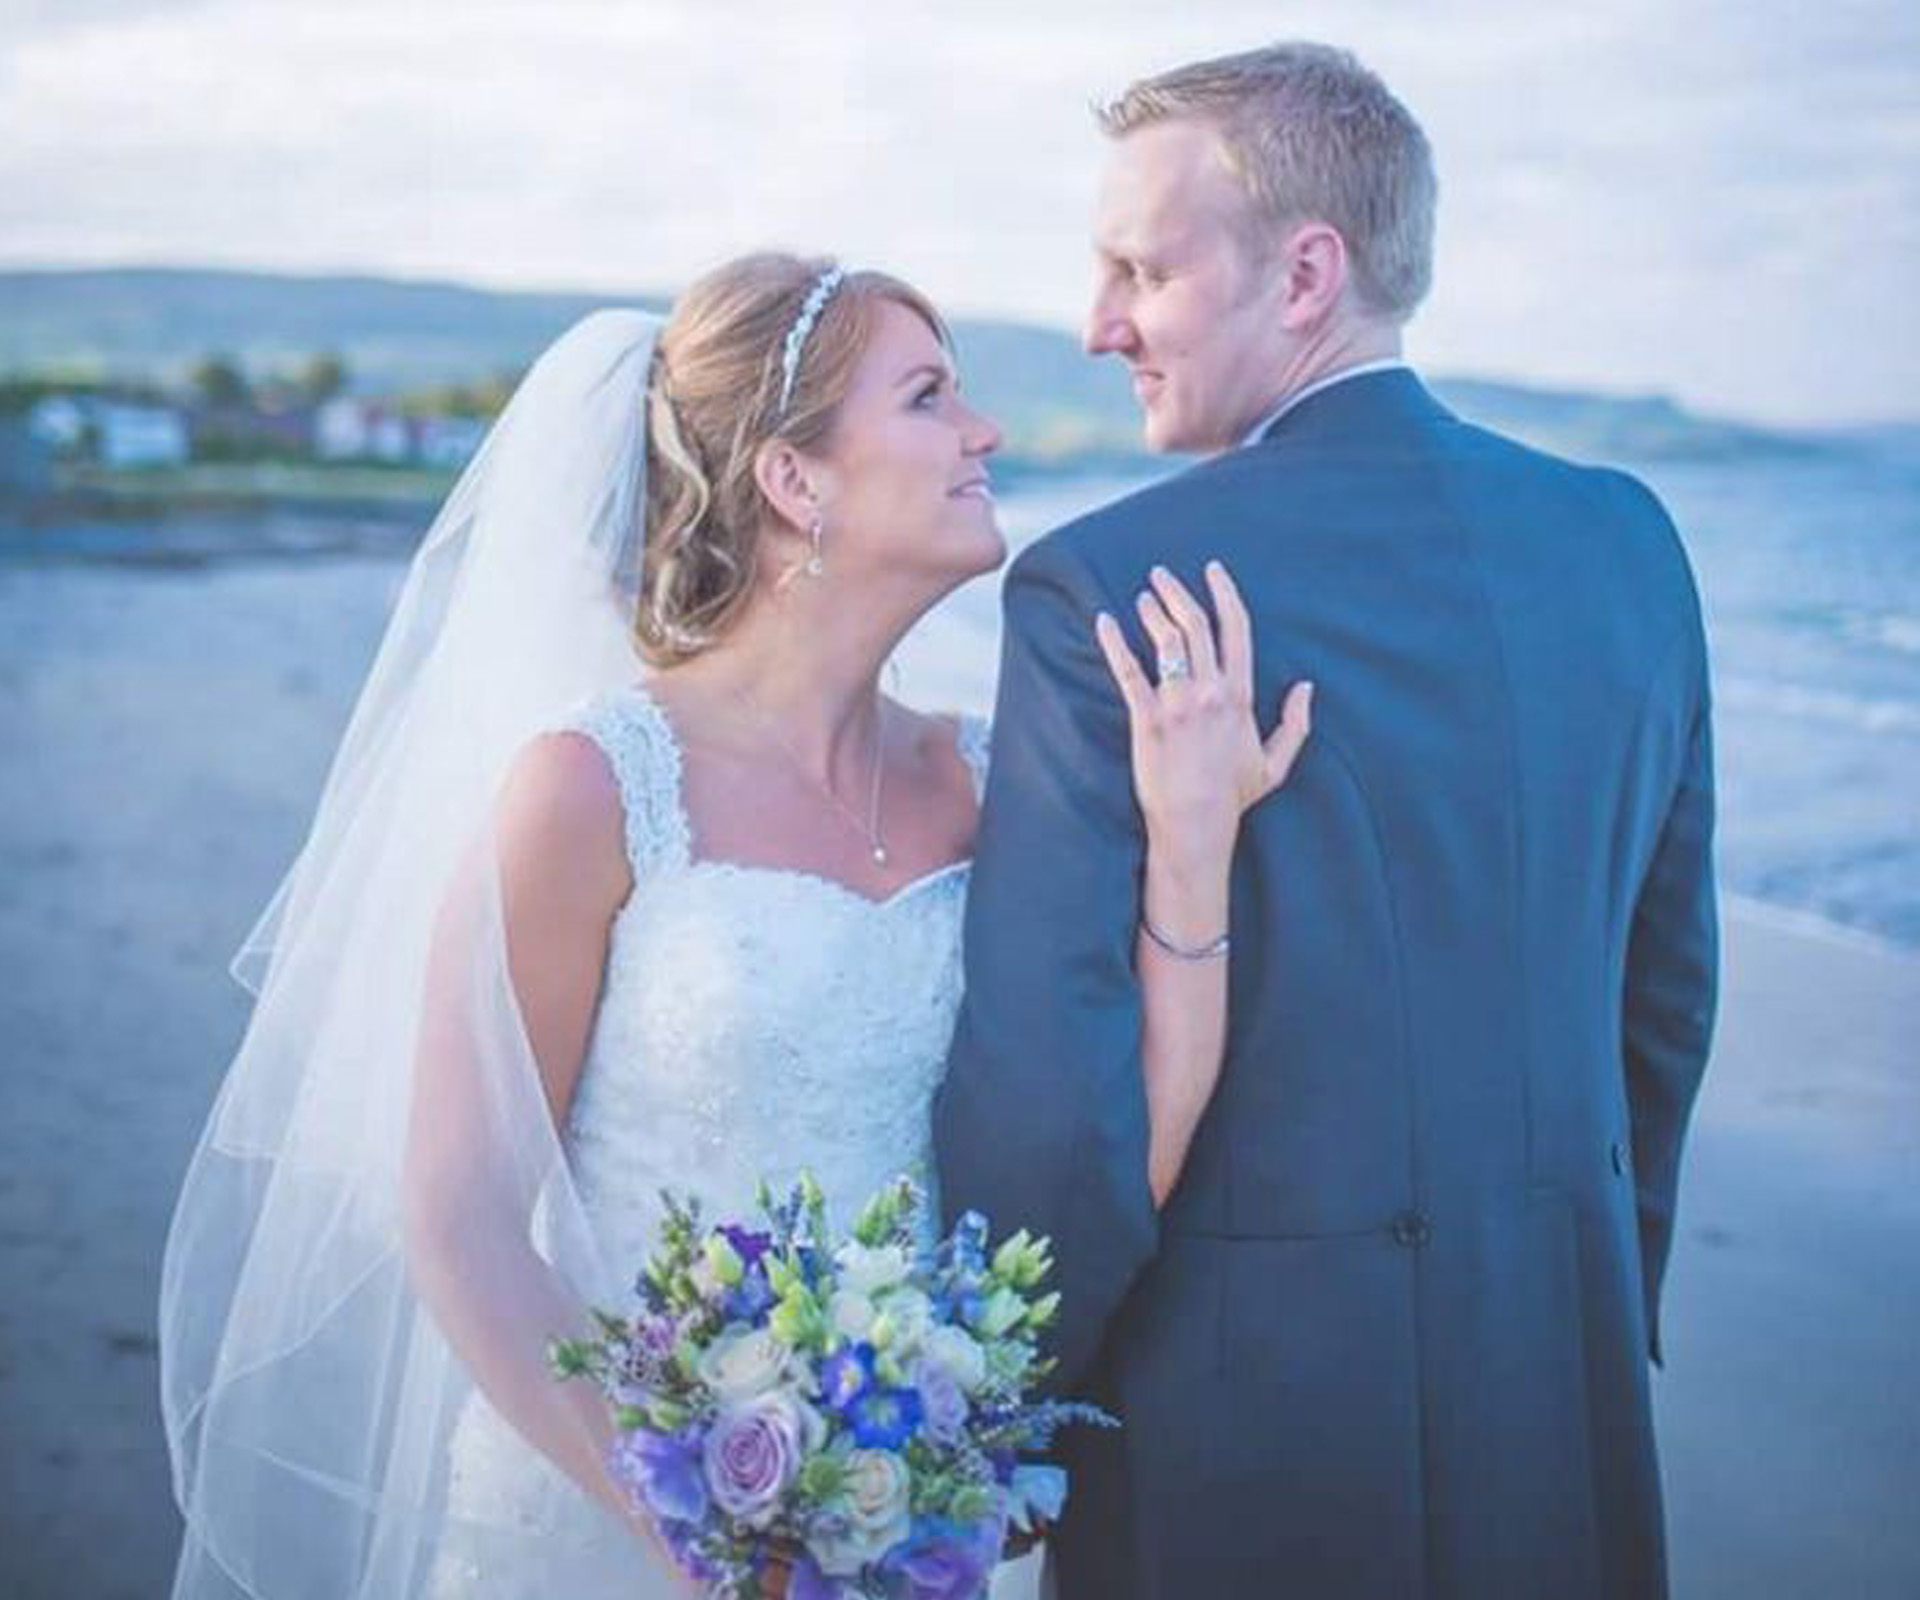 Bride and groom die on honeymoon